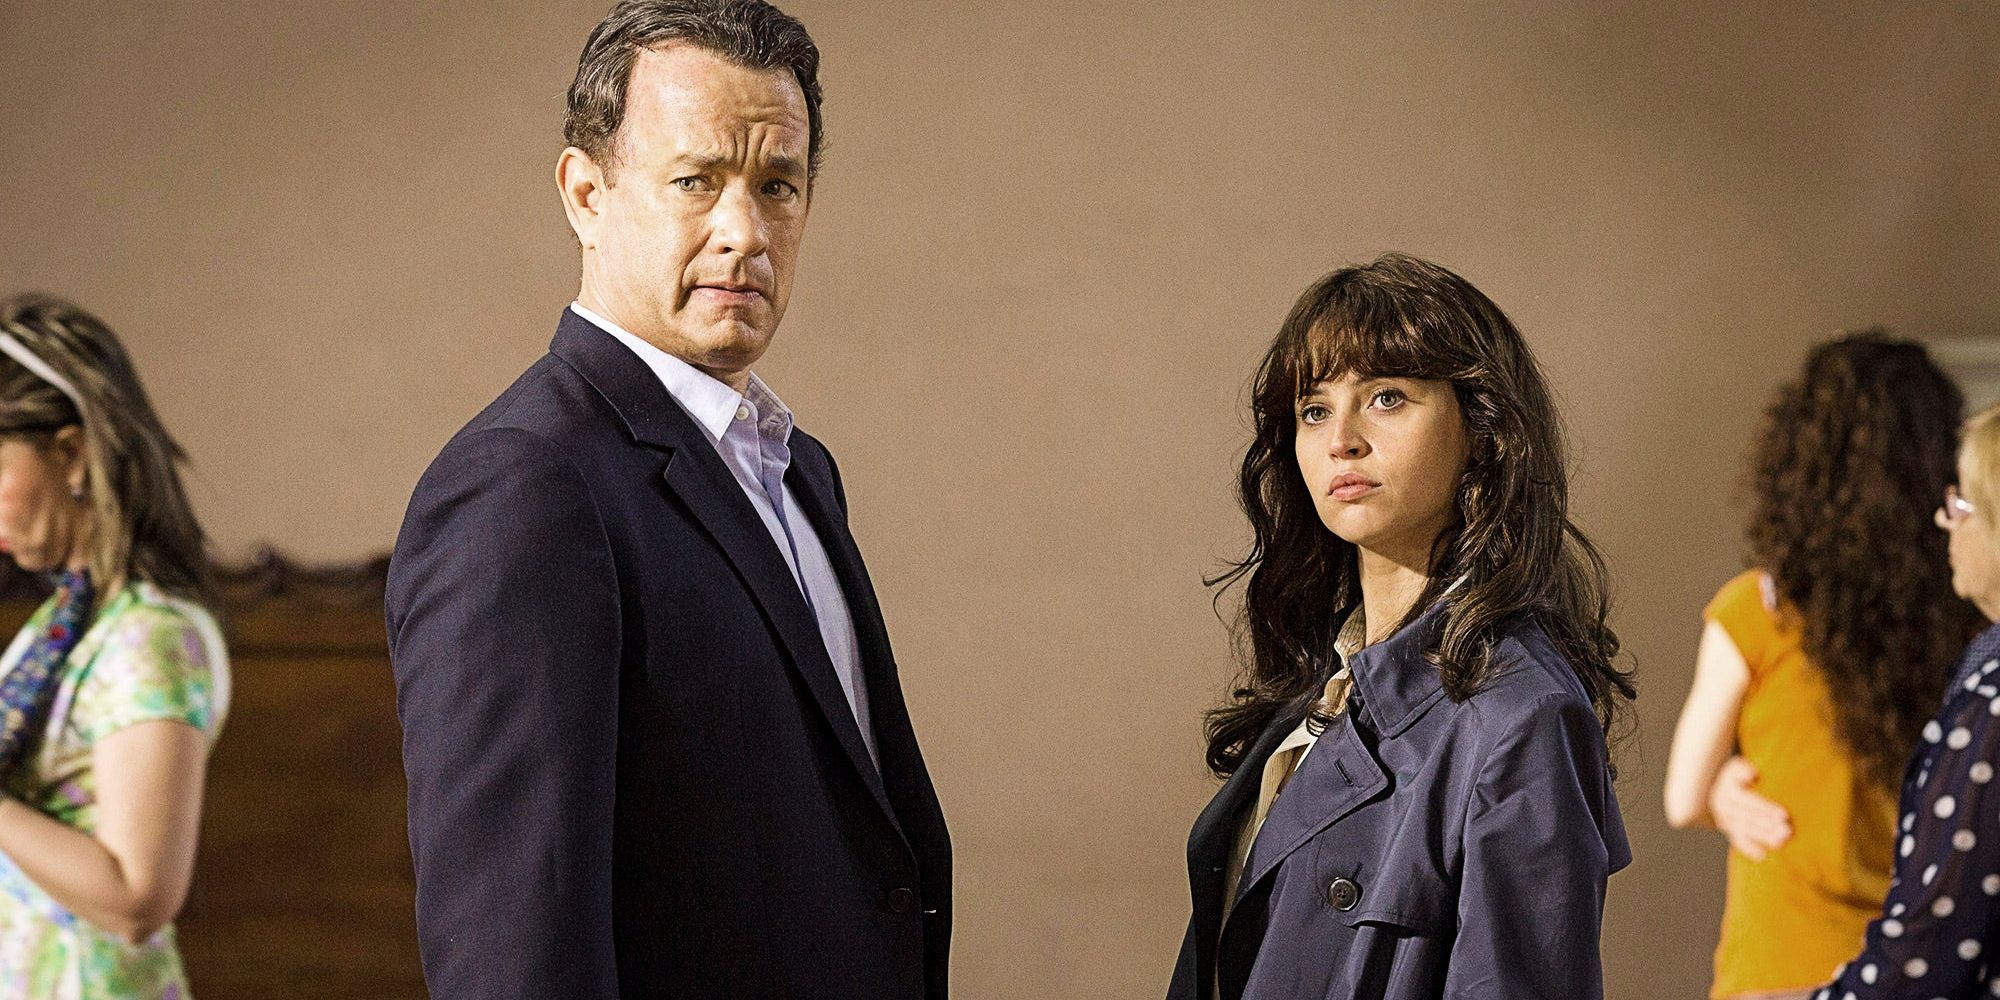 Tom Hanks and Felicity Jones in Inferno